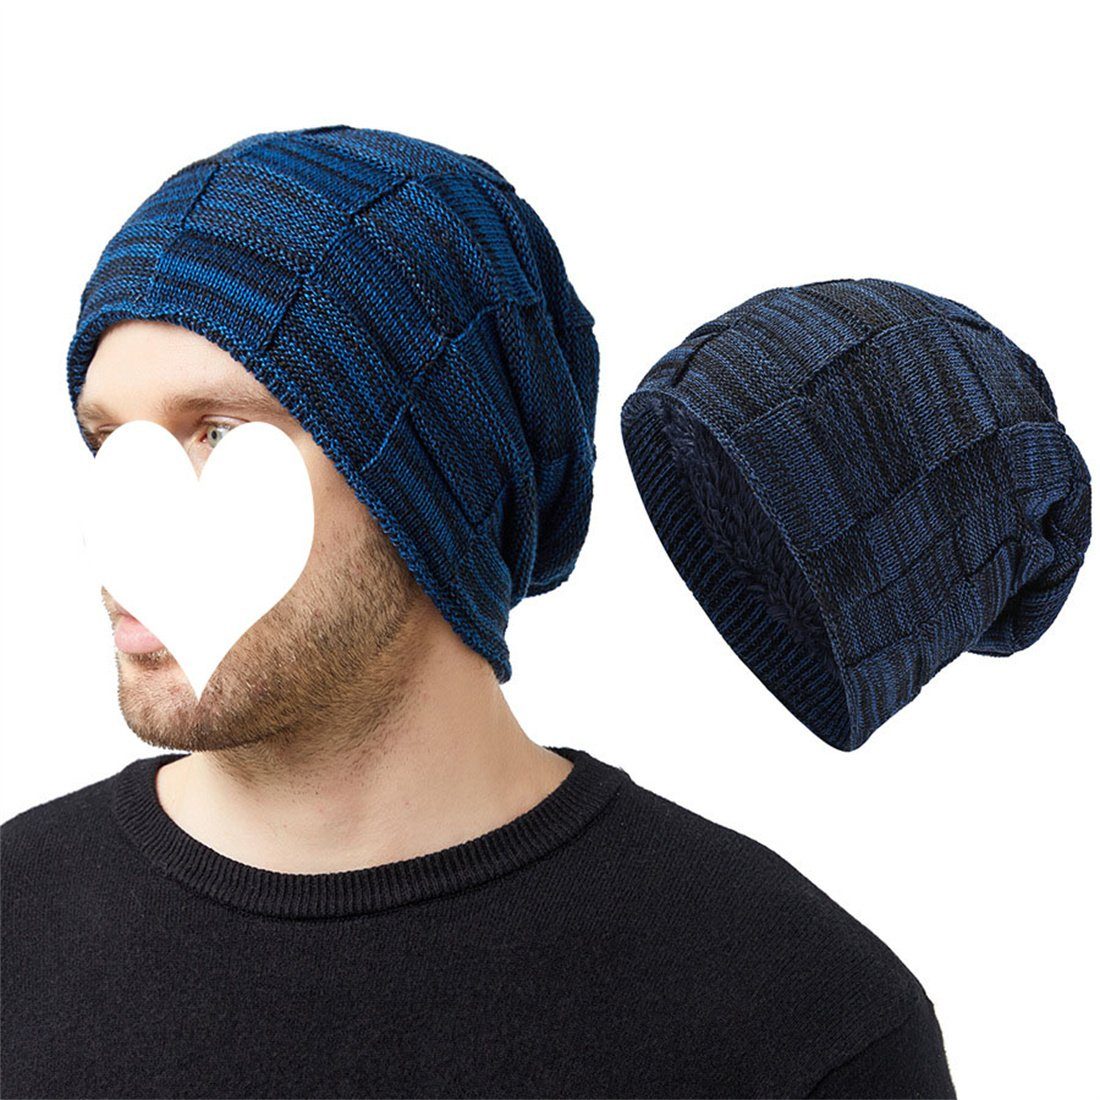 Outdoor-Pullover-Mütze gefütterte Unisex-Winter-Strickmütze, Strickmütze DÖRÖY blau Warme